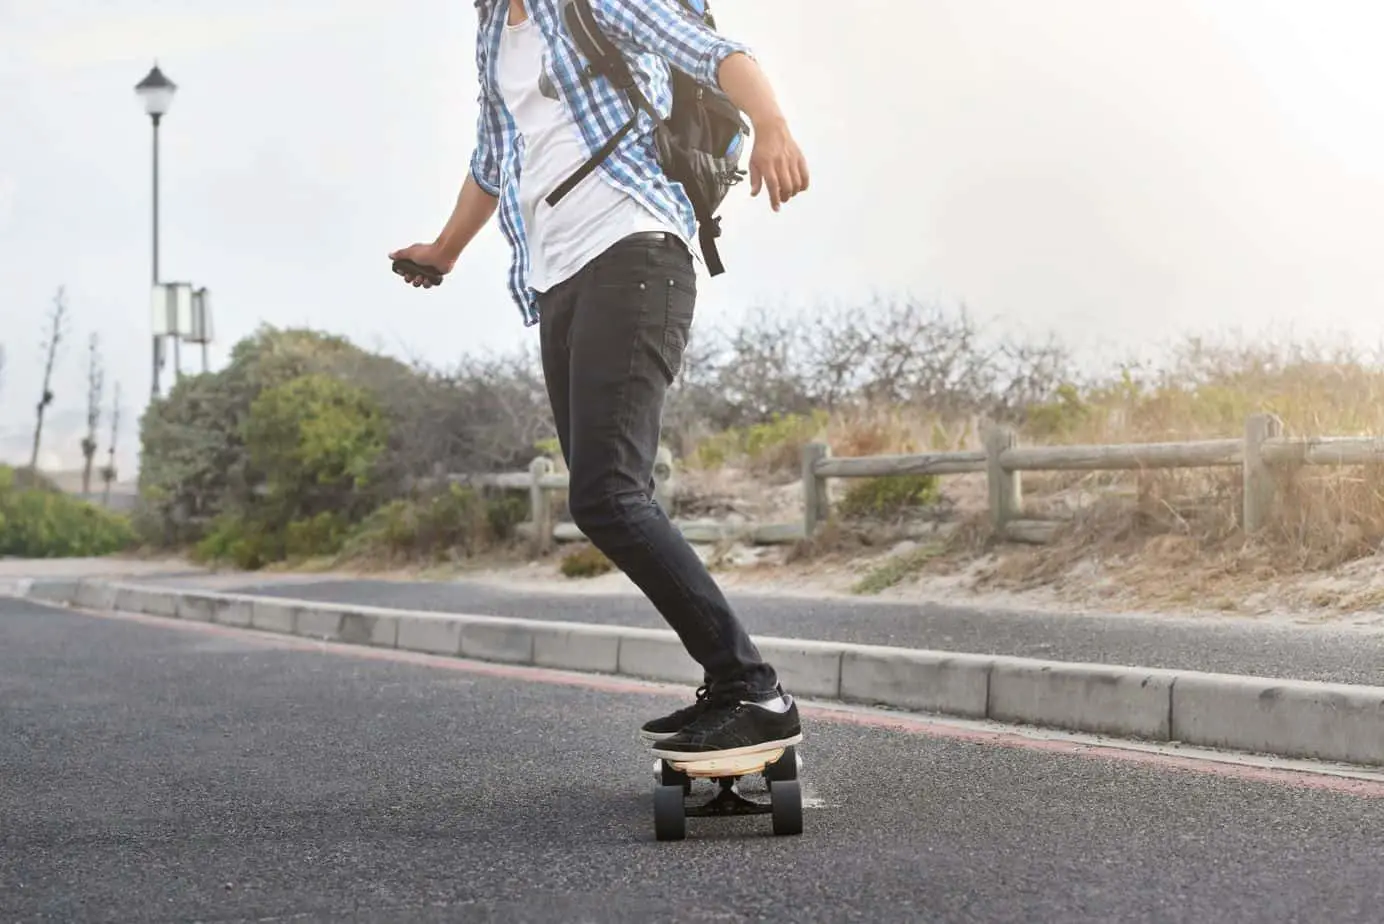 Do Electric Skateboards Have Brakes?